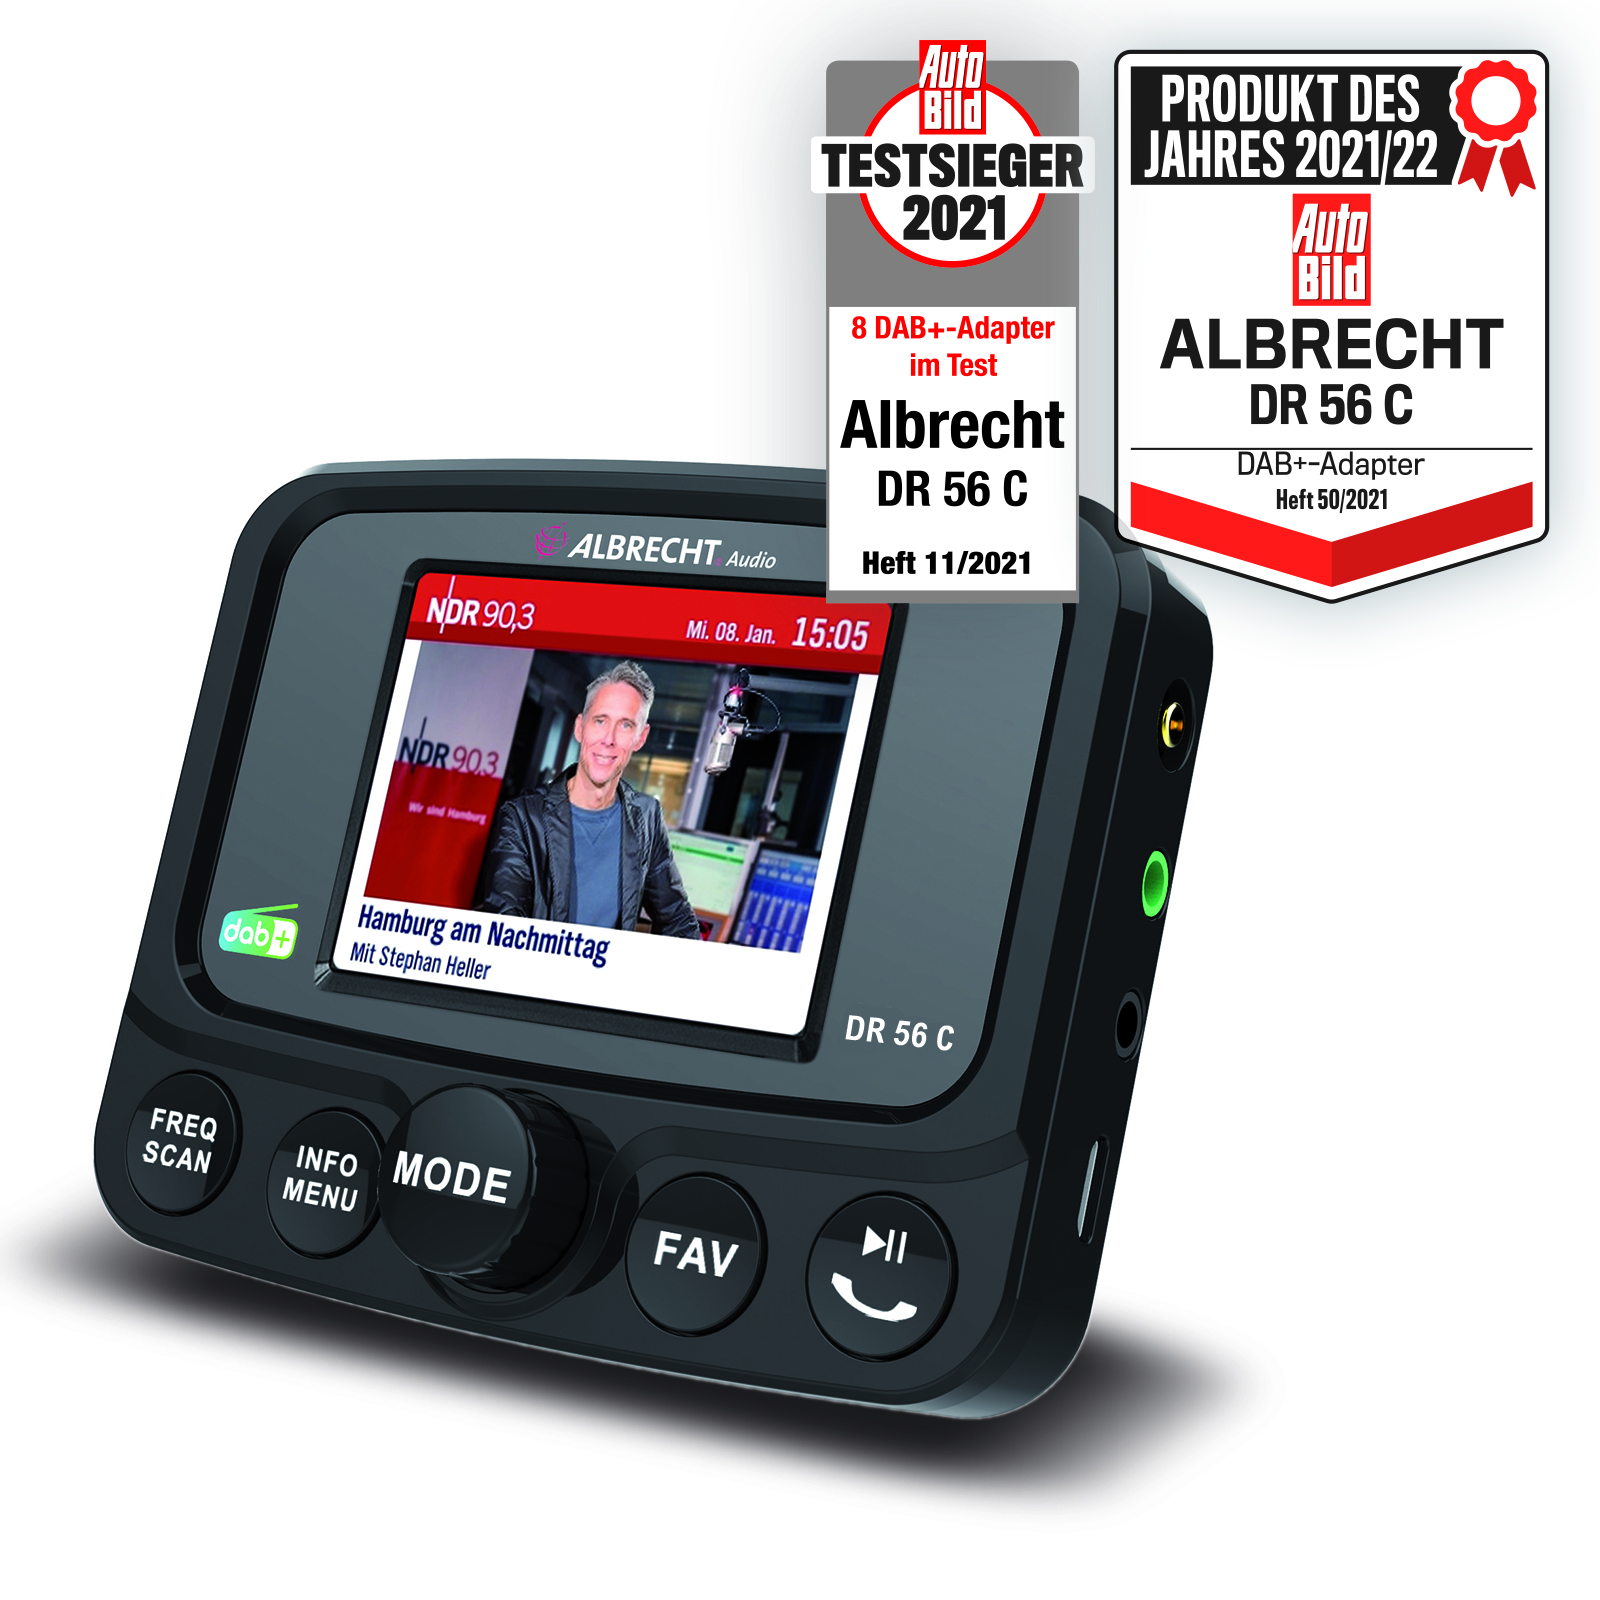 Albrecht DR 56 C DAB+ Autoradio Adapter mit Farbdisplay _4032661271563_ALBRECHT_#8